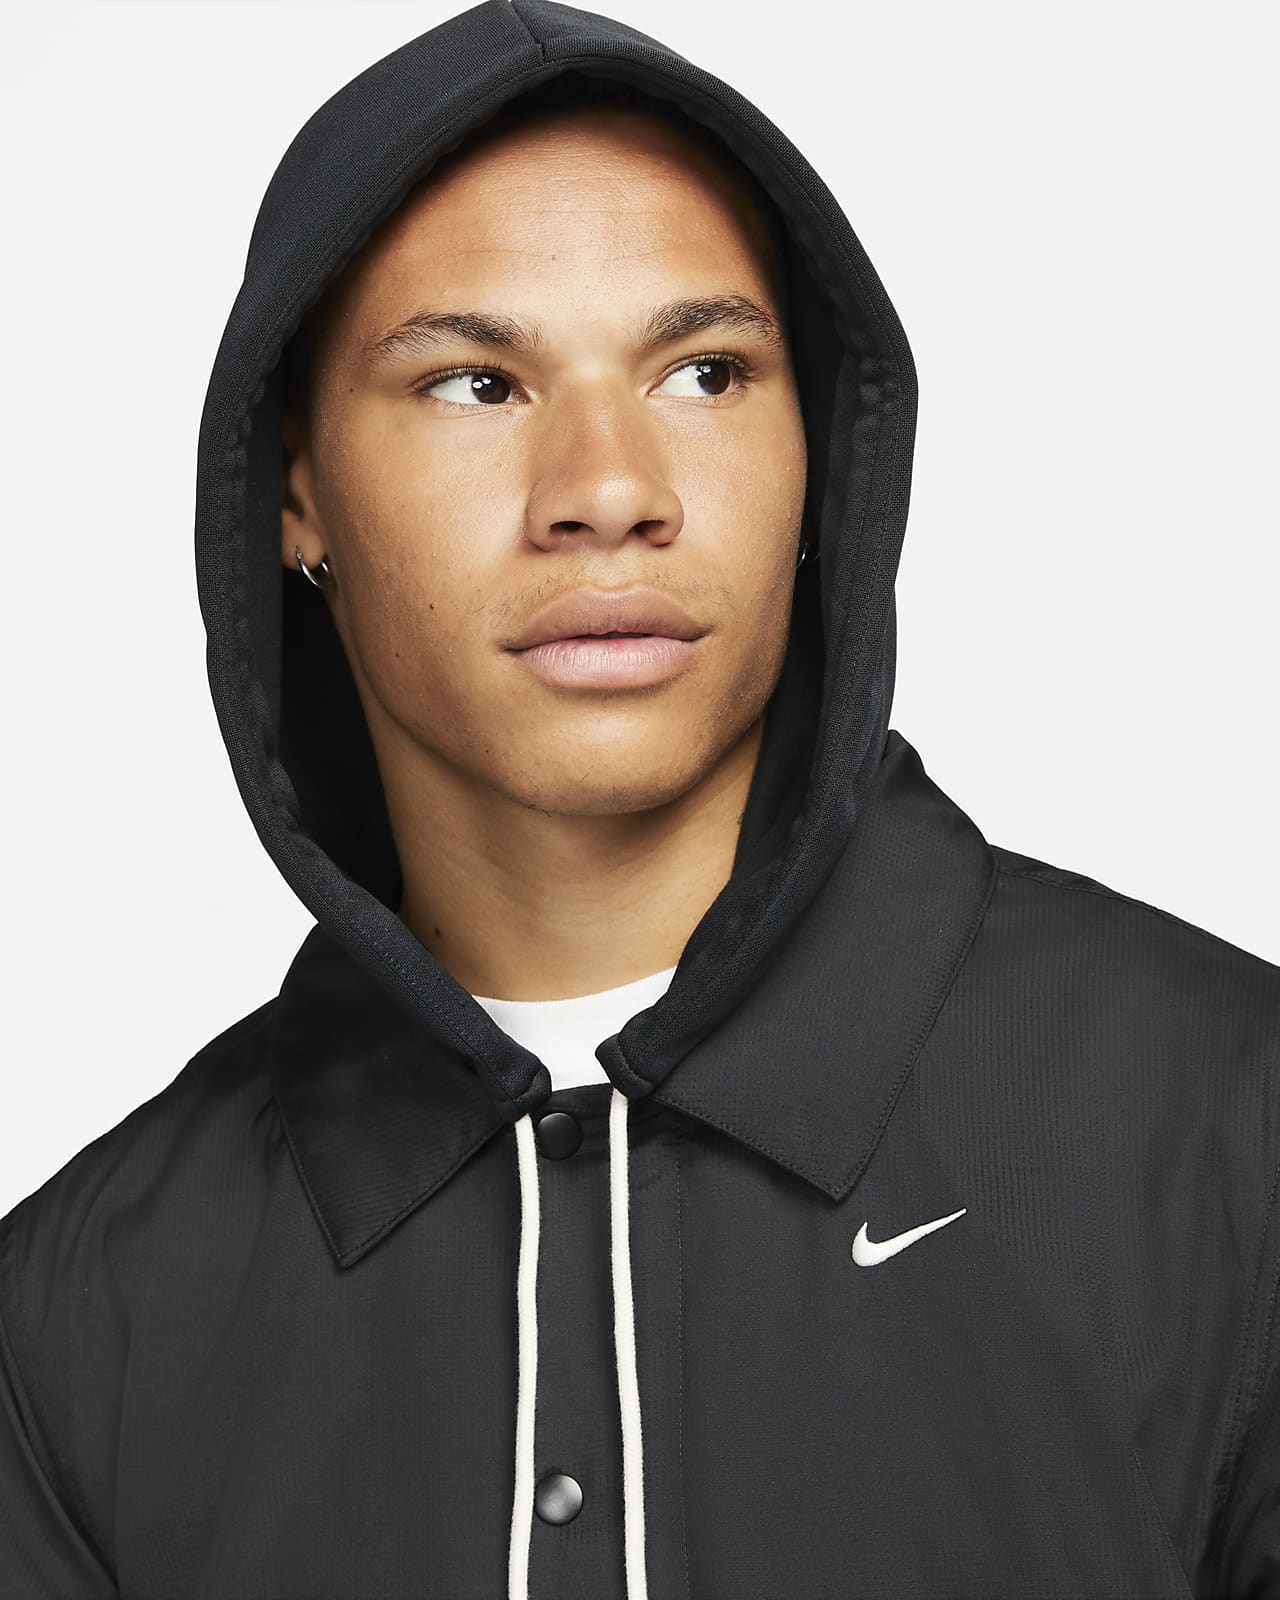 Sudadera con gorro de básquetbol acondicionada para el invierno para hombre Nike Issue. Nike.com